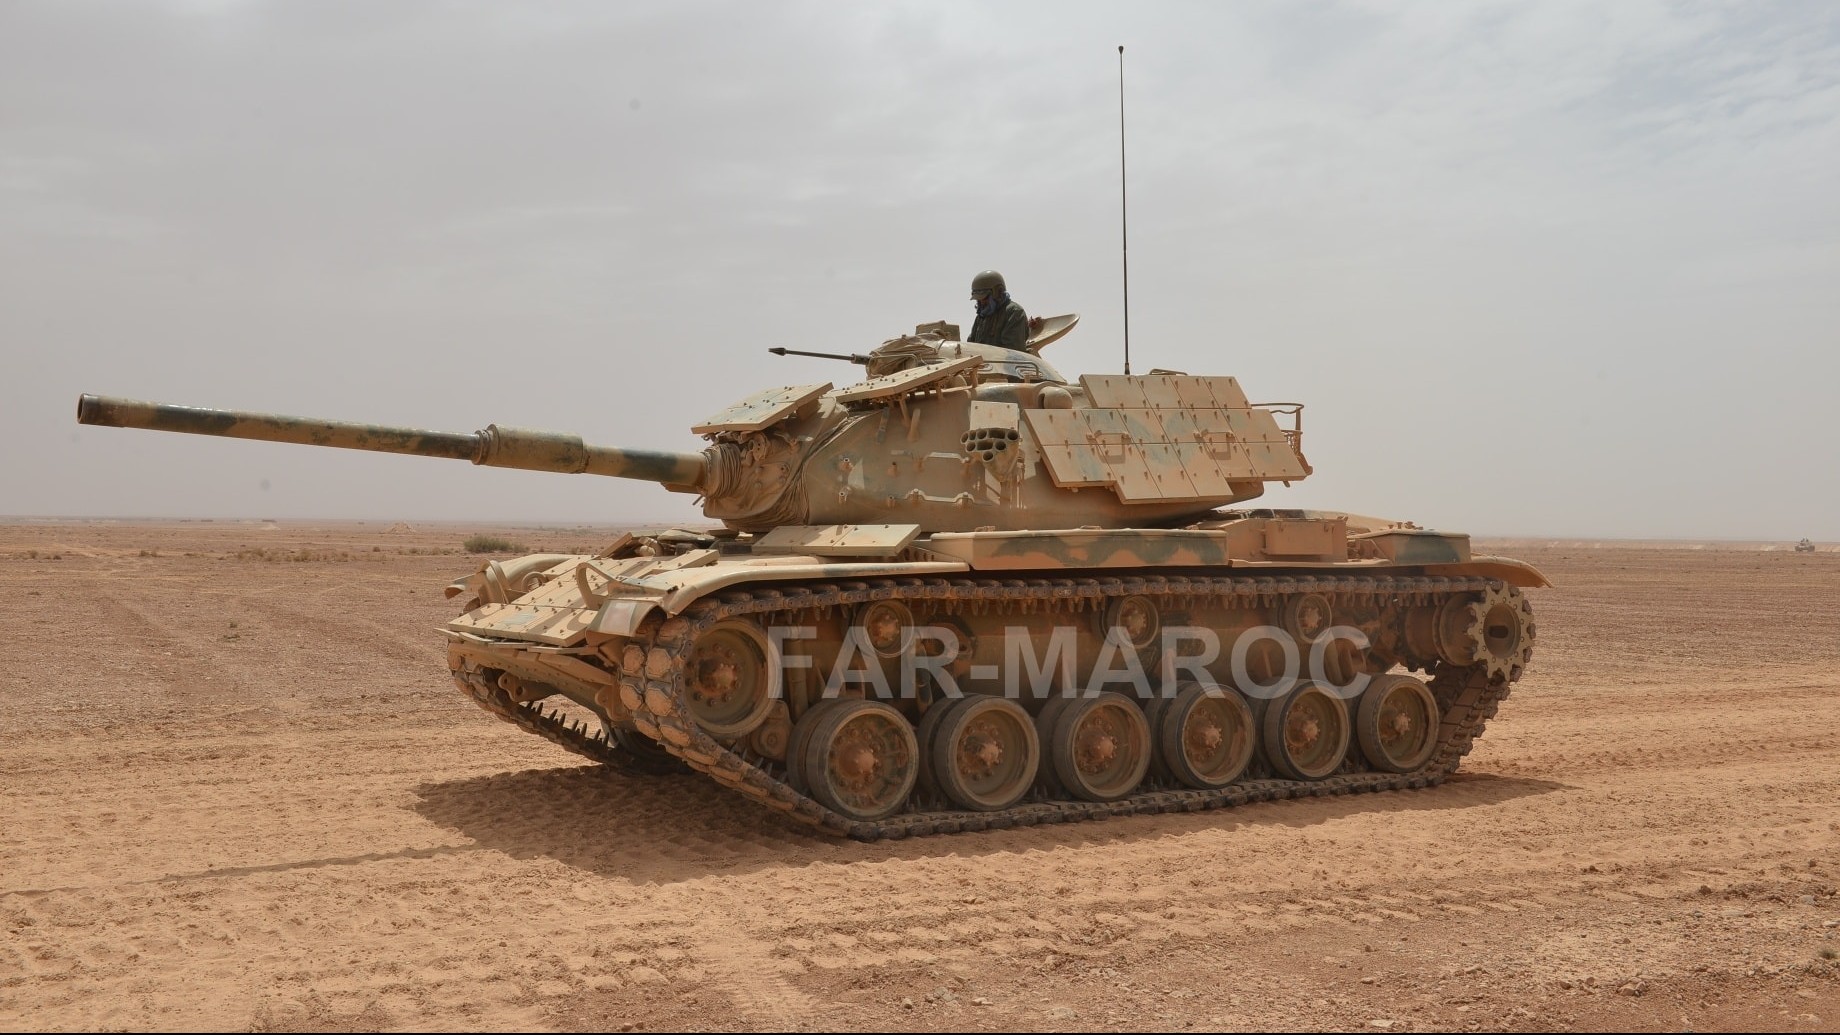 Le M60 Patton est un char de combat américain qui a été massivement utilisé durant la guerre froide par les Etats-Unis et leurs alliés.
